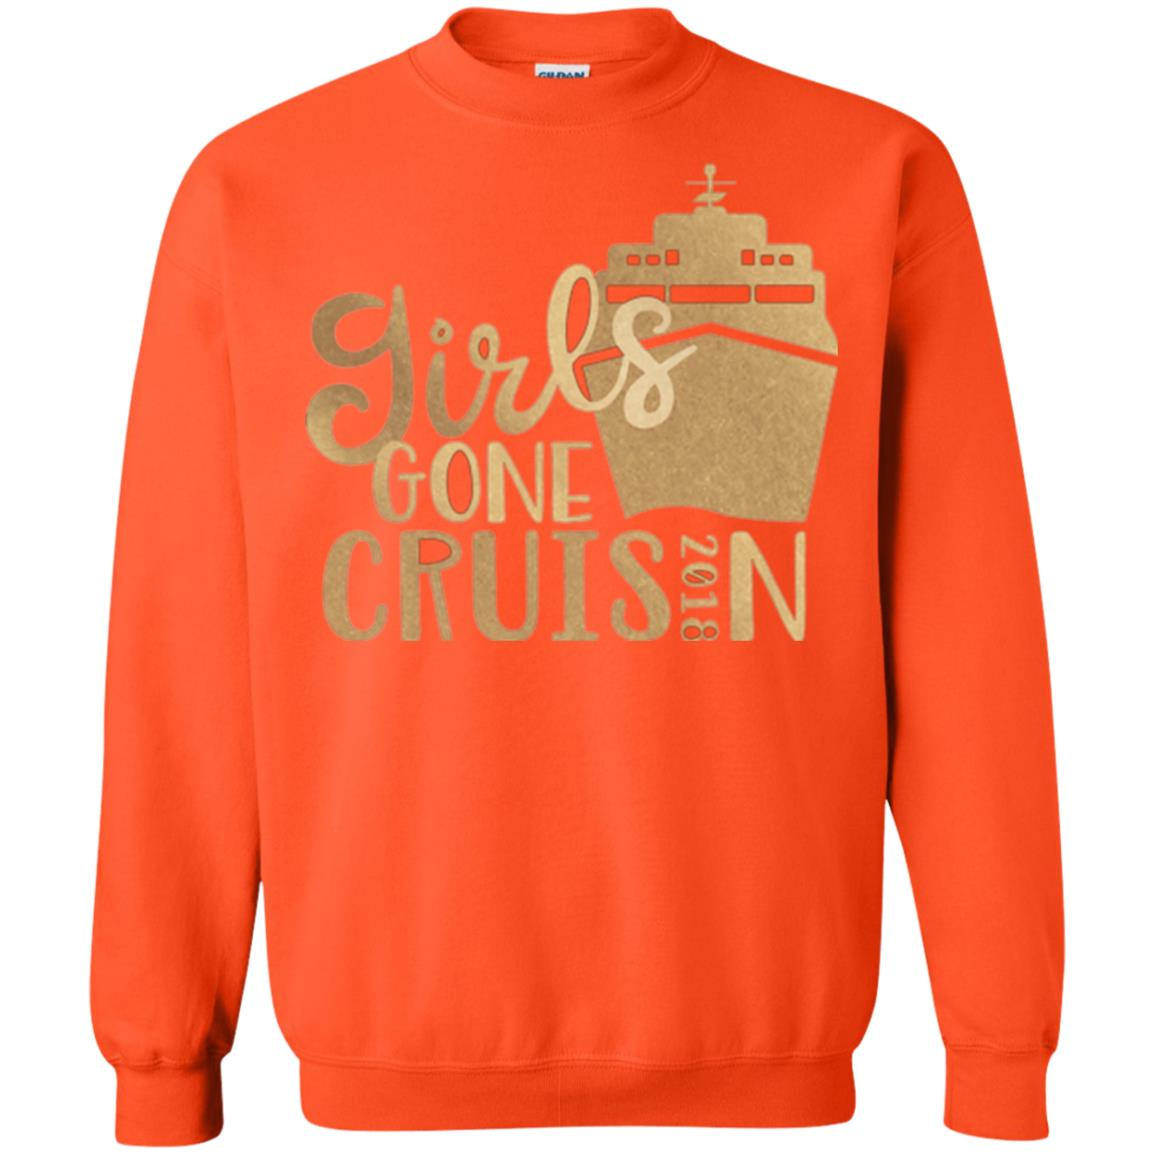 Inktee Store - Girls Gone Cruisin Vacation Shirt - Girls Cruise 2018 Sweatshirt Image